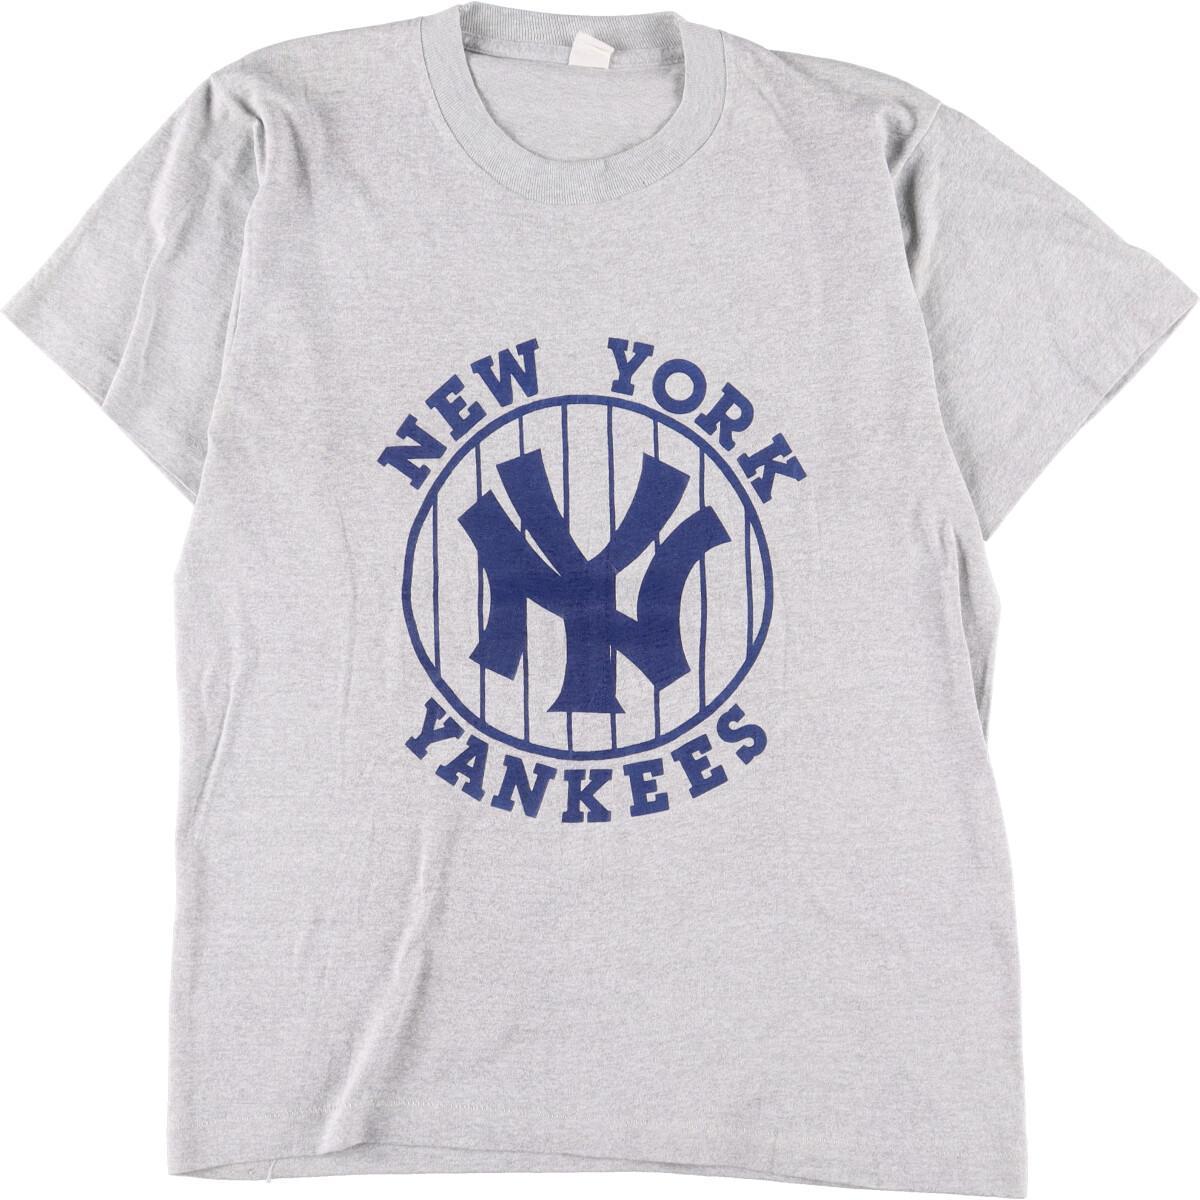 素晴らしい品質 ニューヨークヤンキース YANKEES YORK NEW MLB 古着